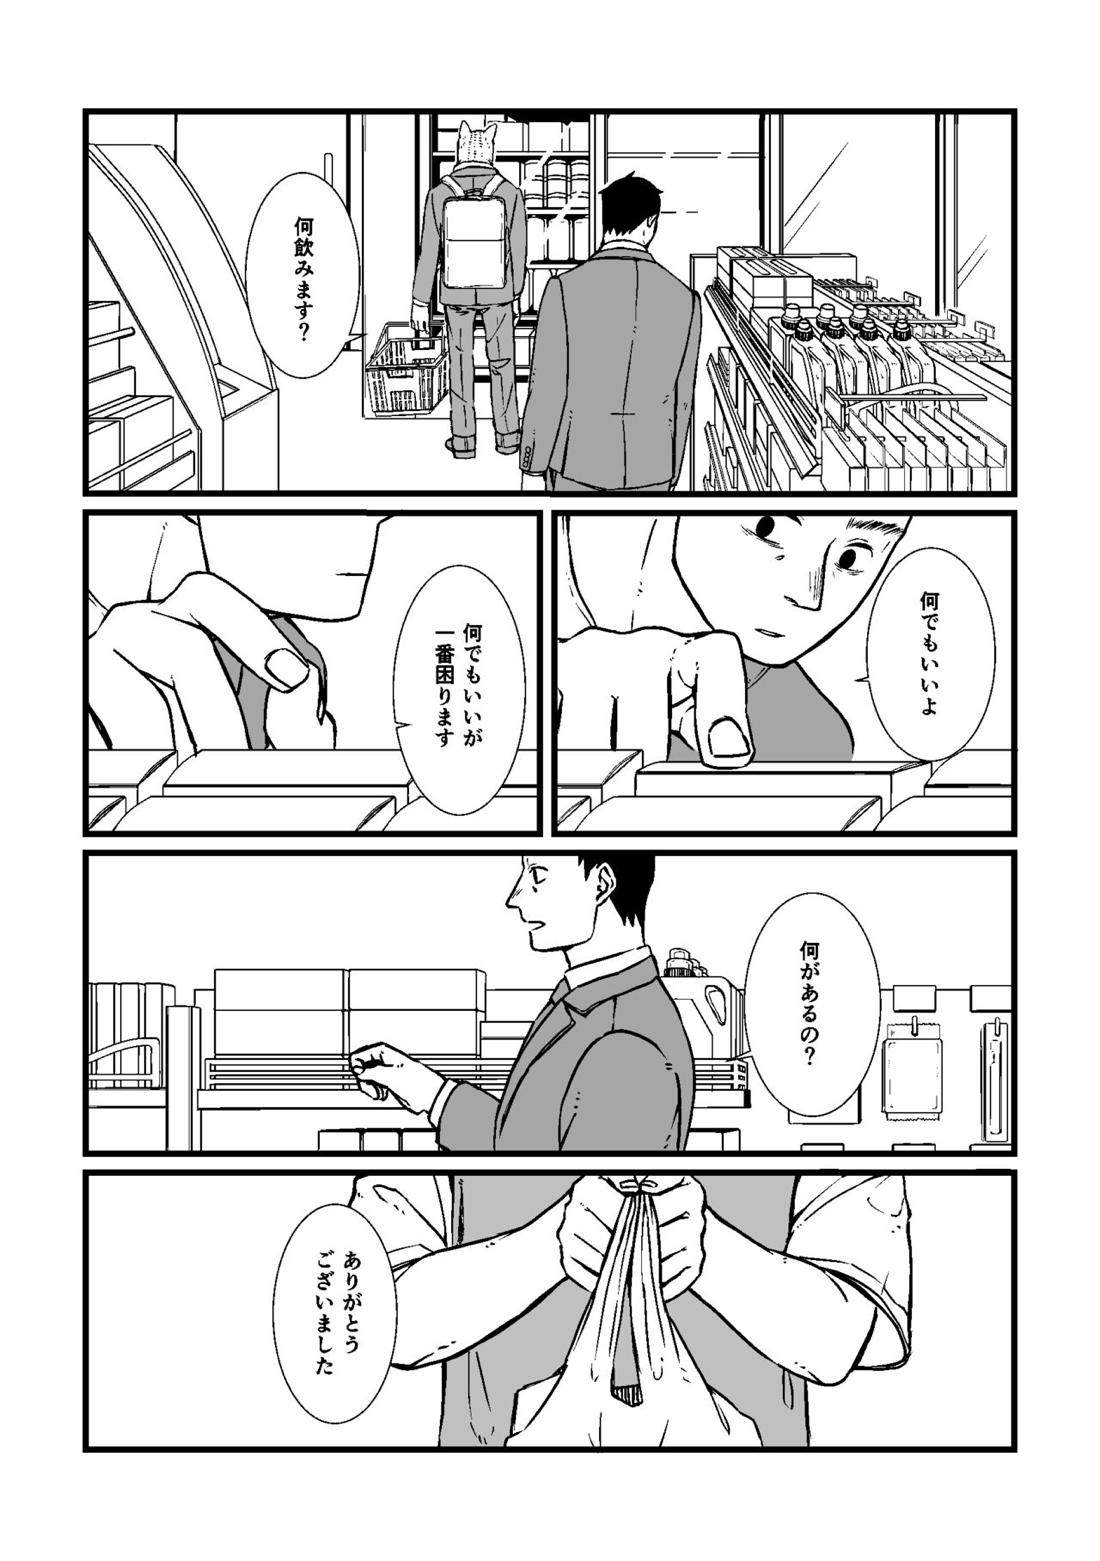 三茶x塚内 R18 漫画 5ページ